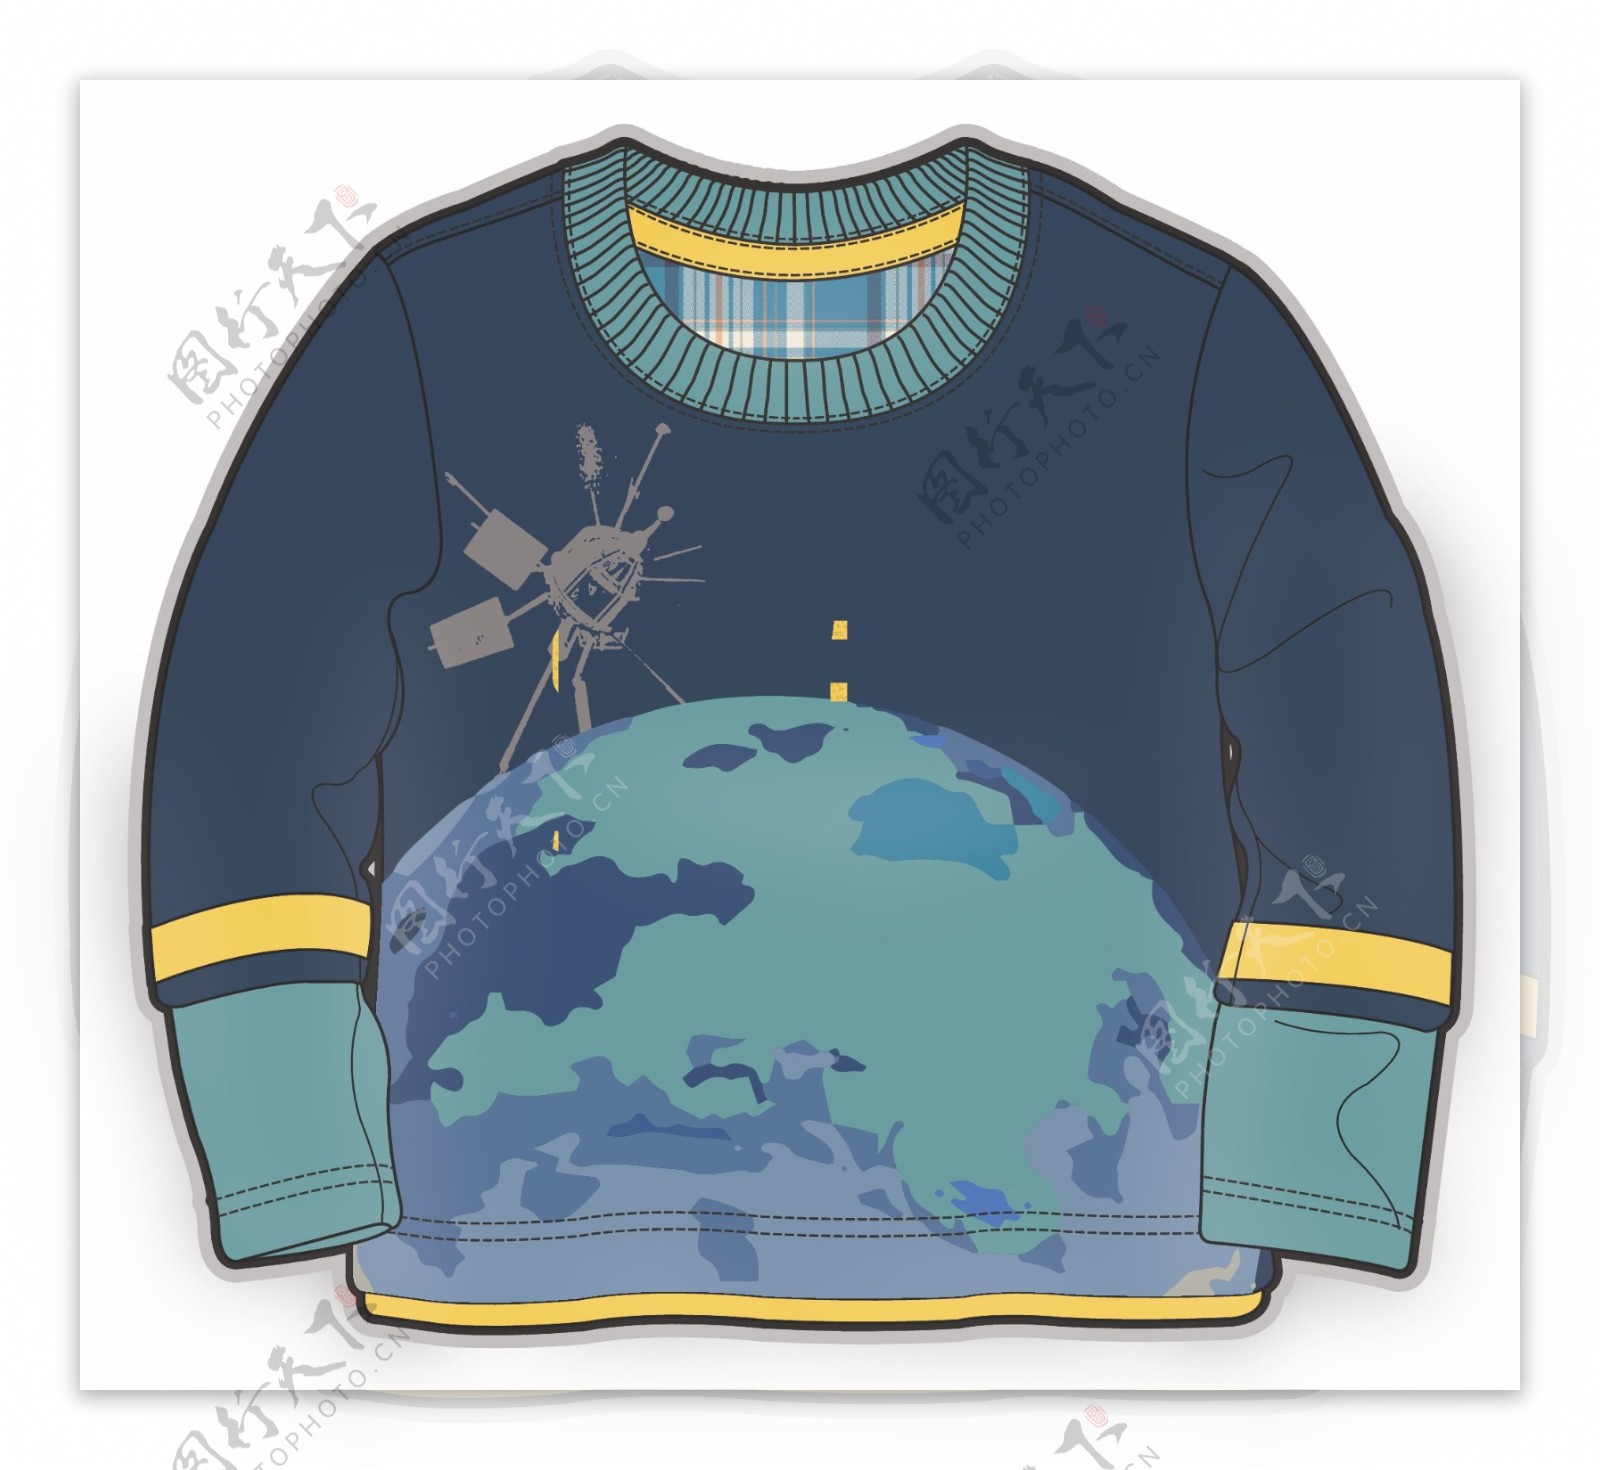 地球卫星儿童男孩服装设计彩色矢量原稿